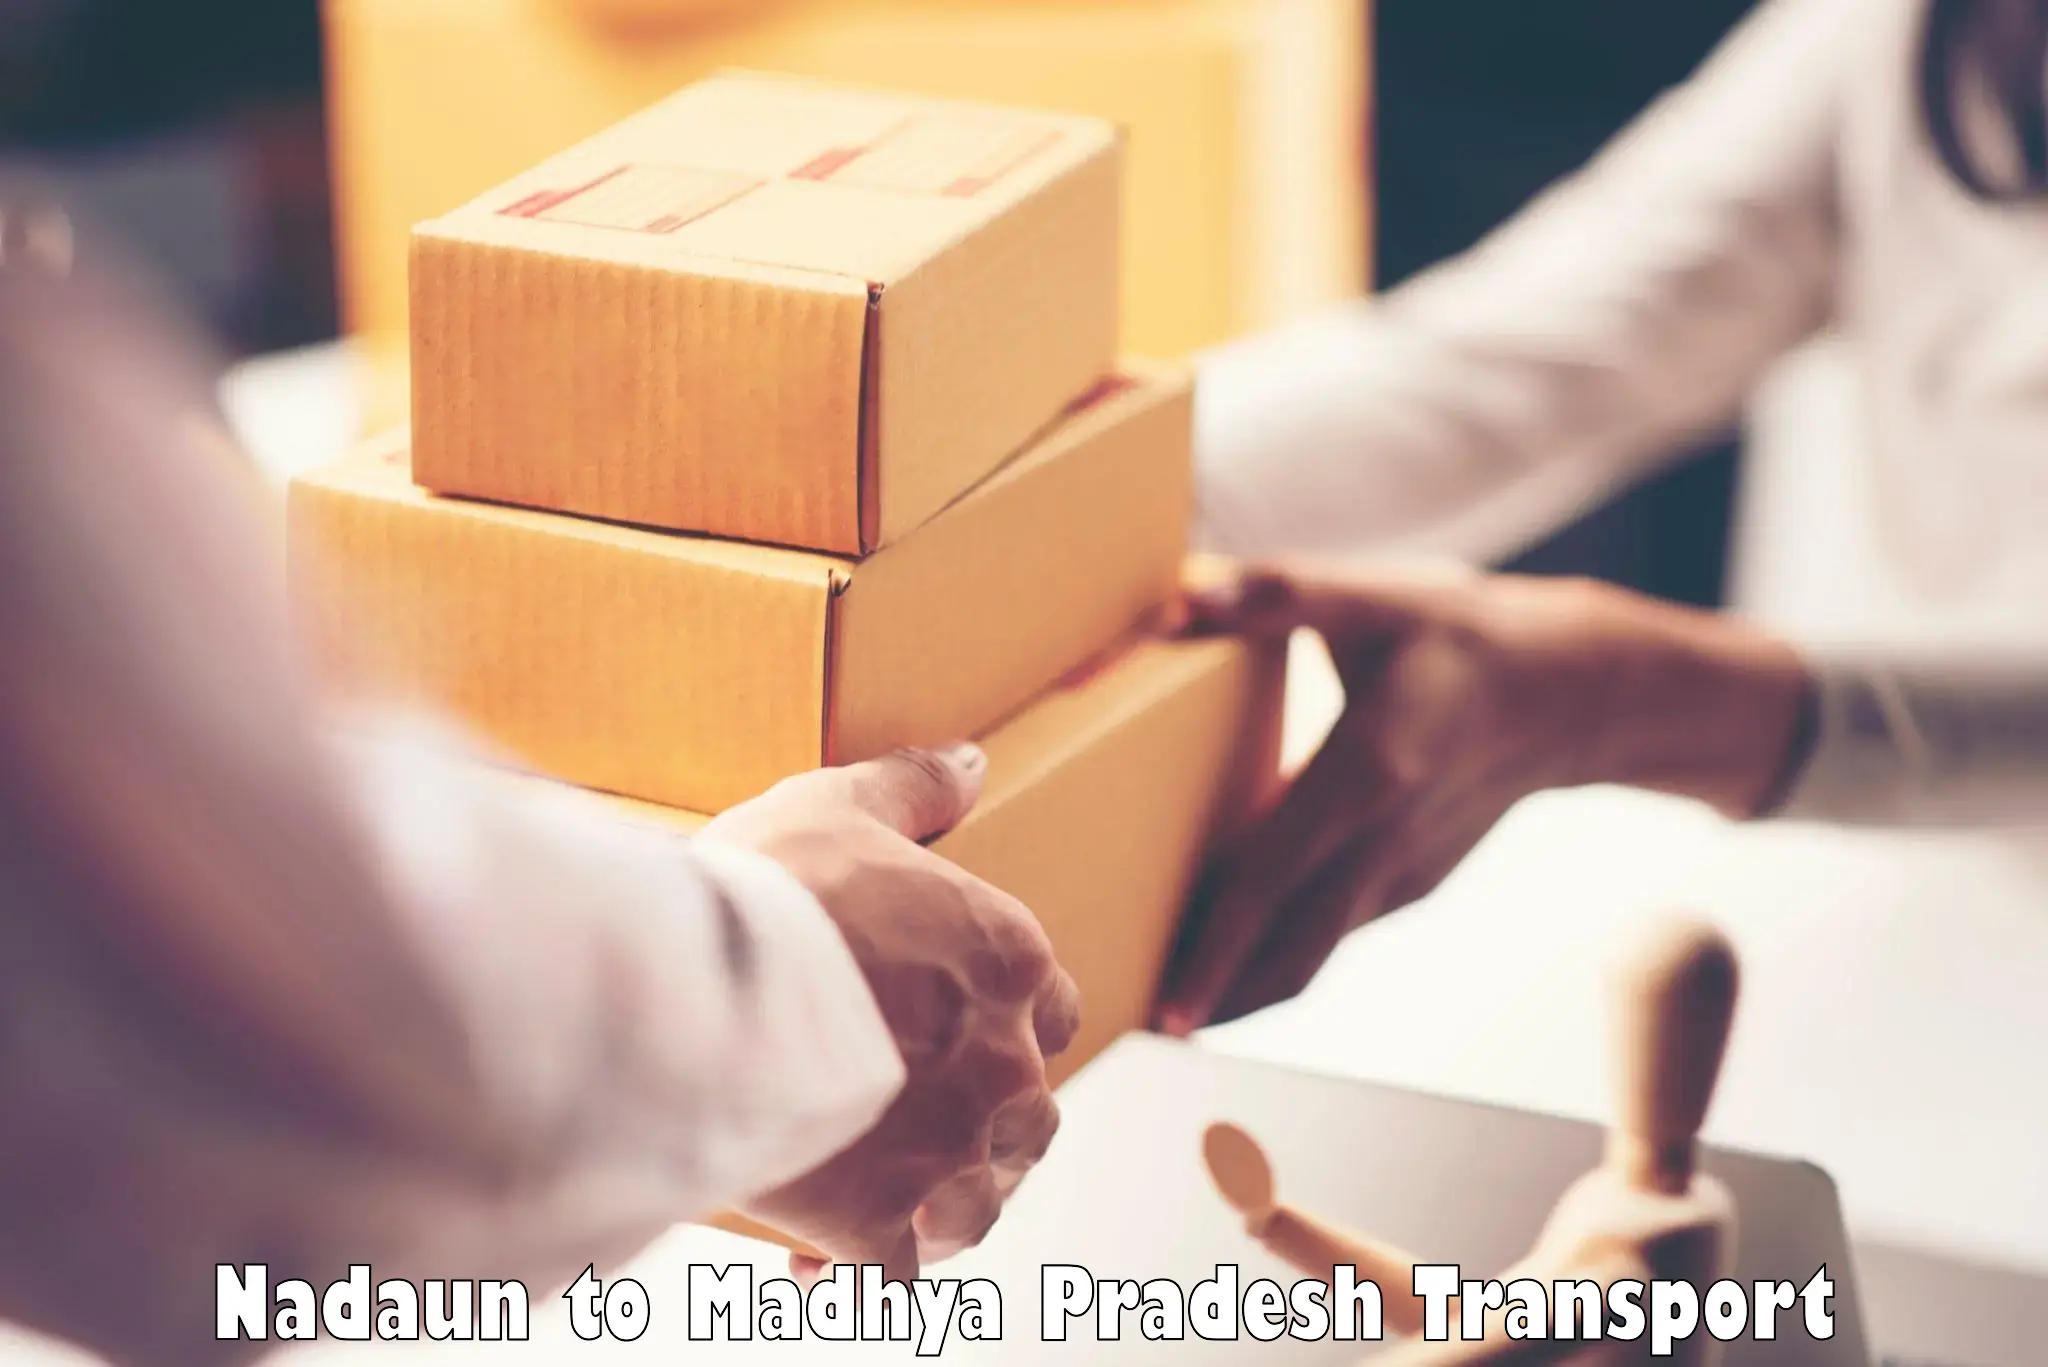 Transport in sharing Nadaun to Madhya Pradesh